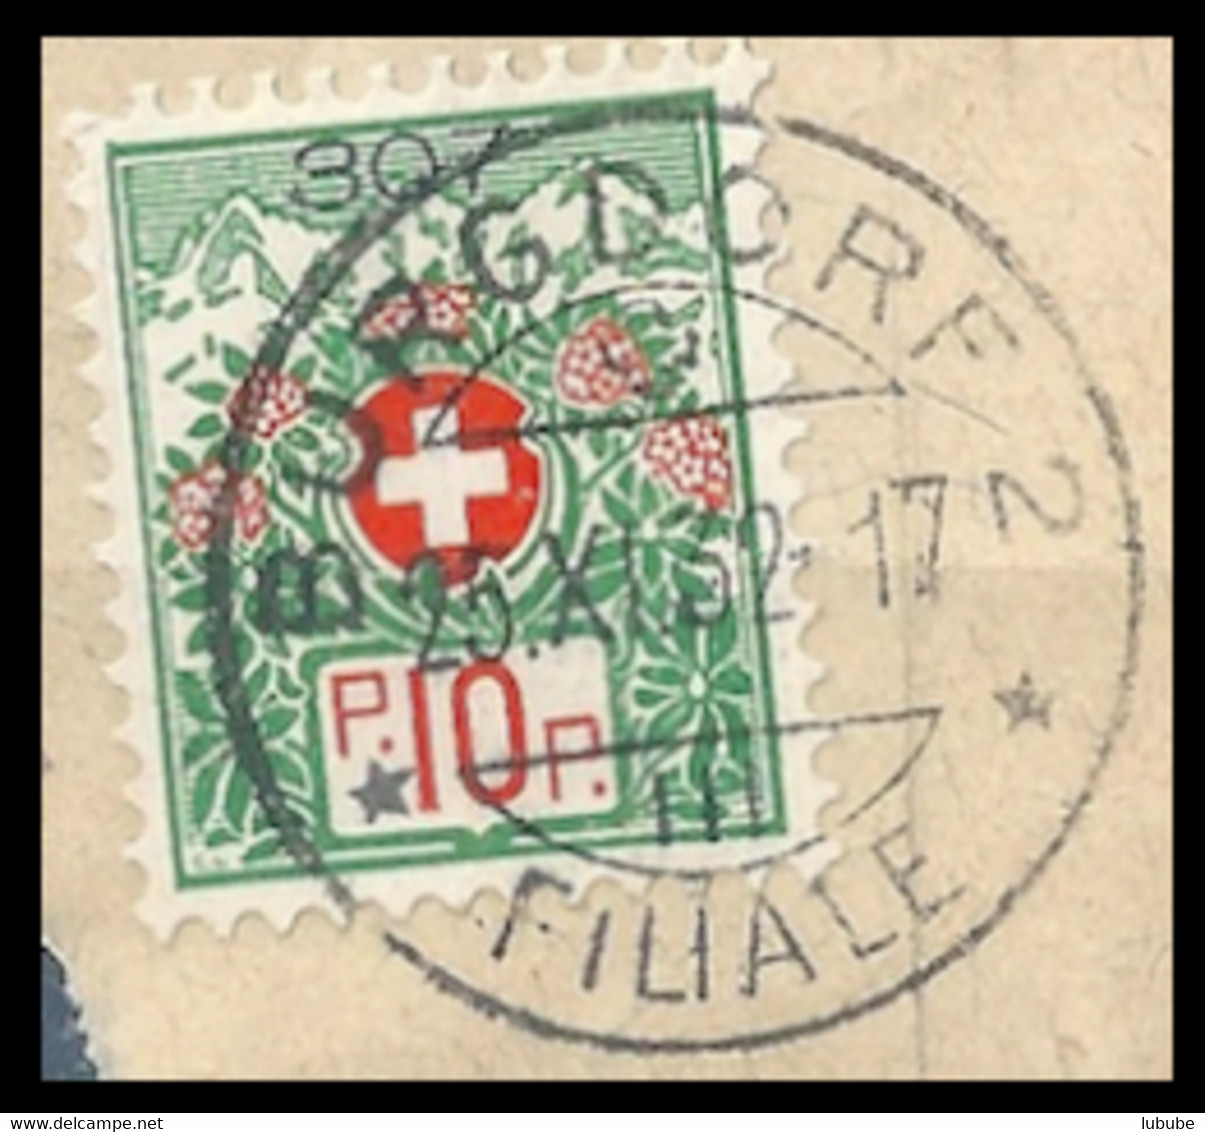 Portofreiheit 12A  "Burgdorf 2 Filiale"  (Kontrollzeichen 307 - Bezirks Krankenhaus)   1932 - Franquicia